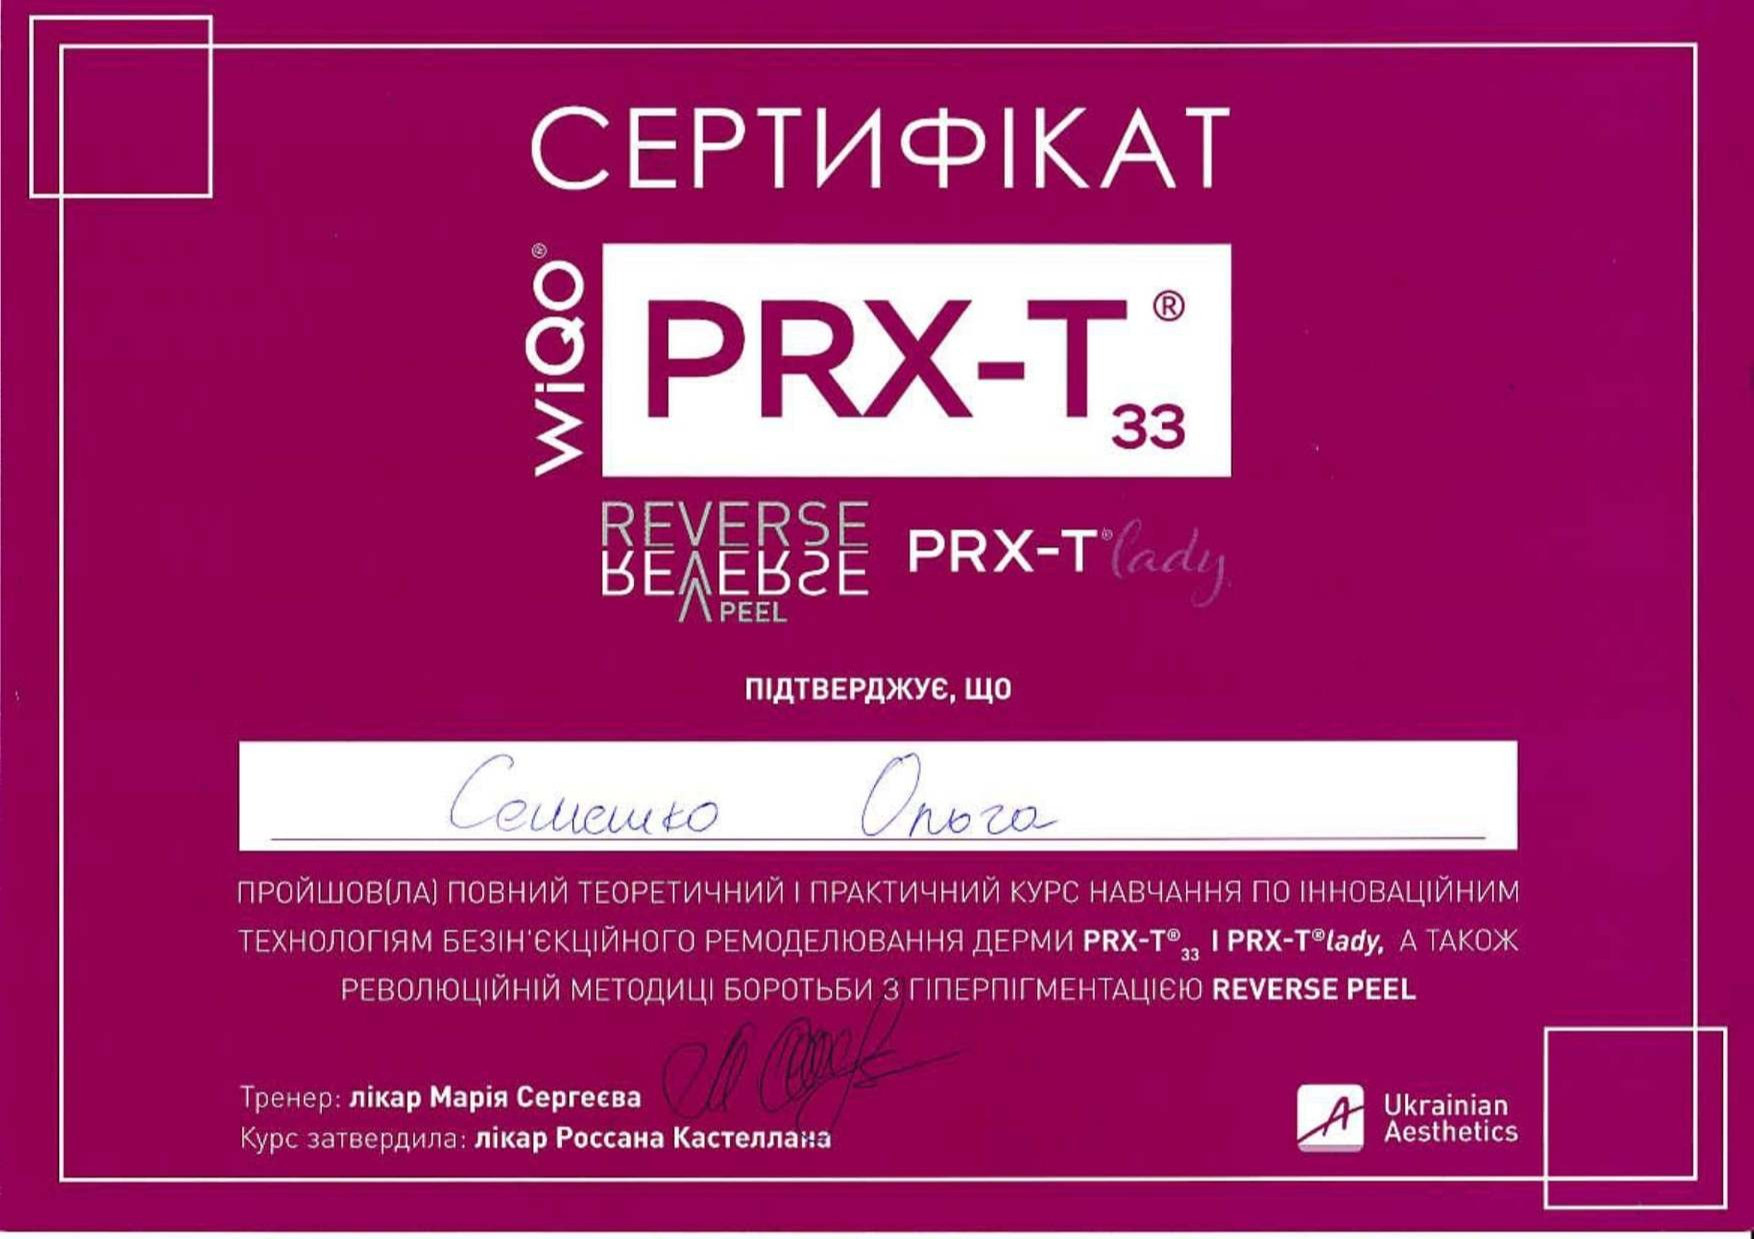 Сертификат о прохождении полного теоретического и практического курса обучения по инновационным технологиям безинъекционного ремоделирования дермы PRX-T